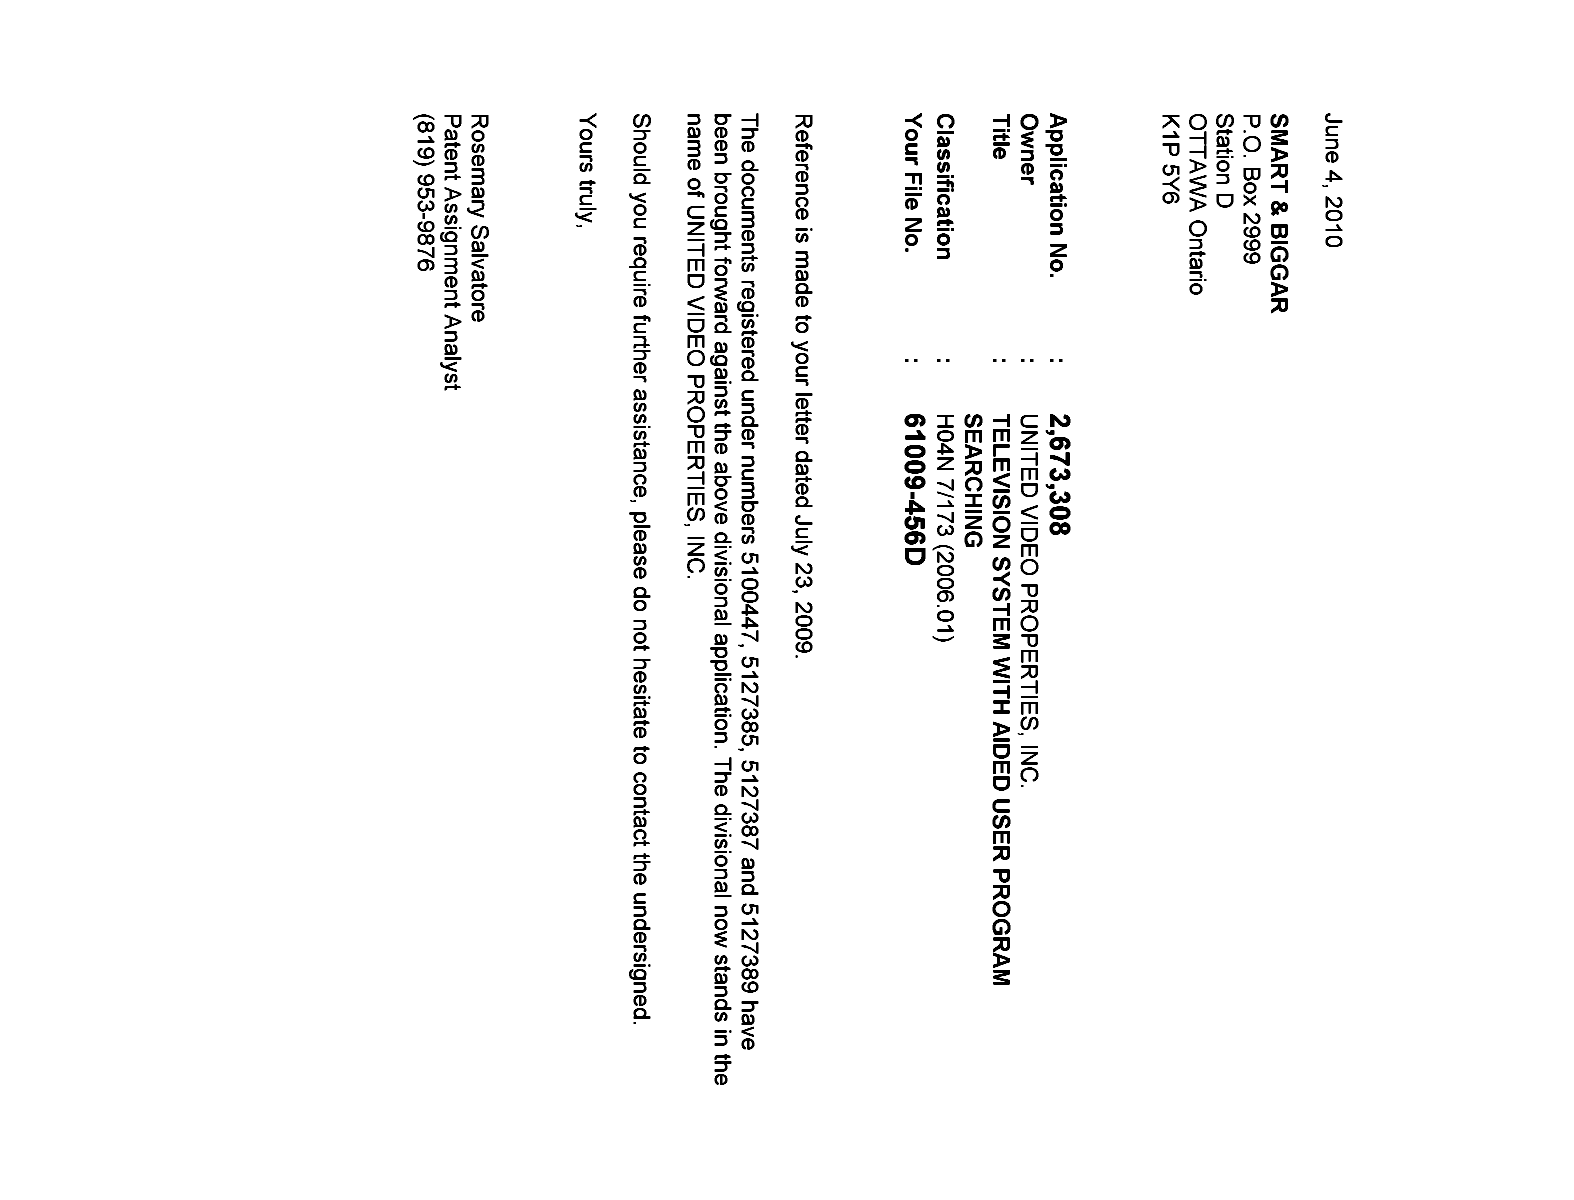 Document de brevet canadien 2673308. Correspondance 20100604. Image 1 de 1